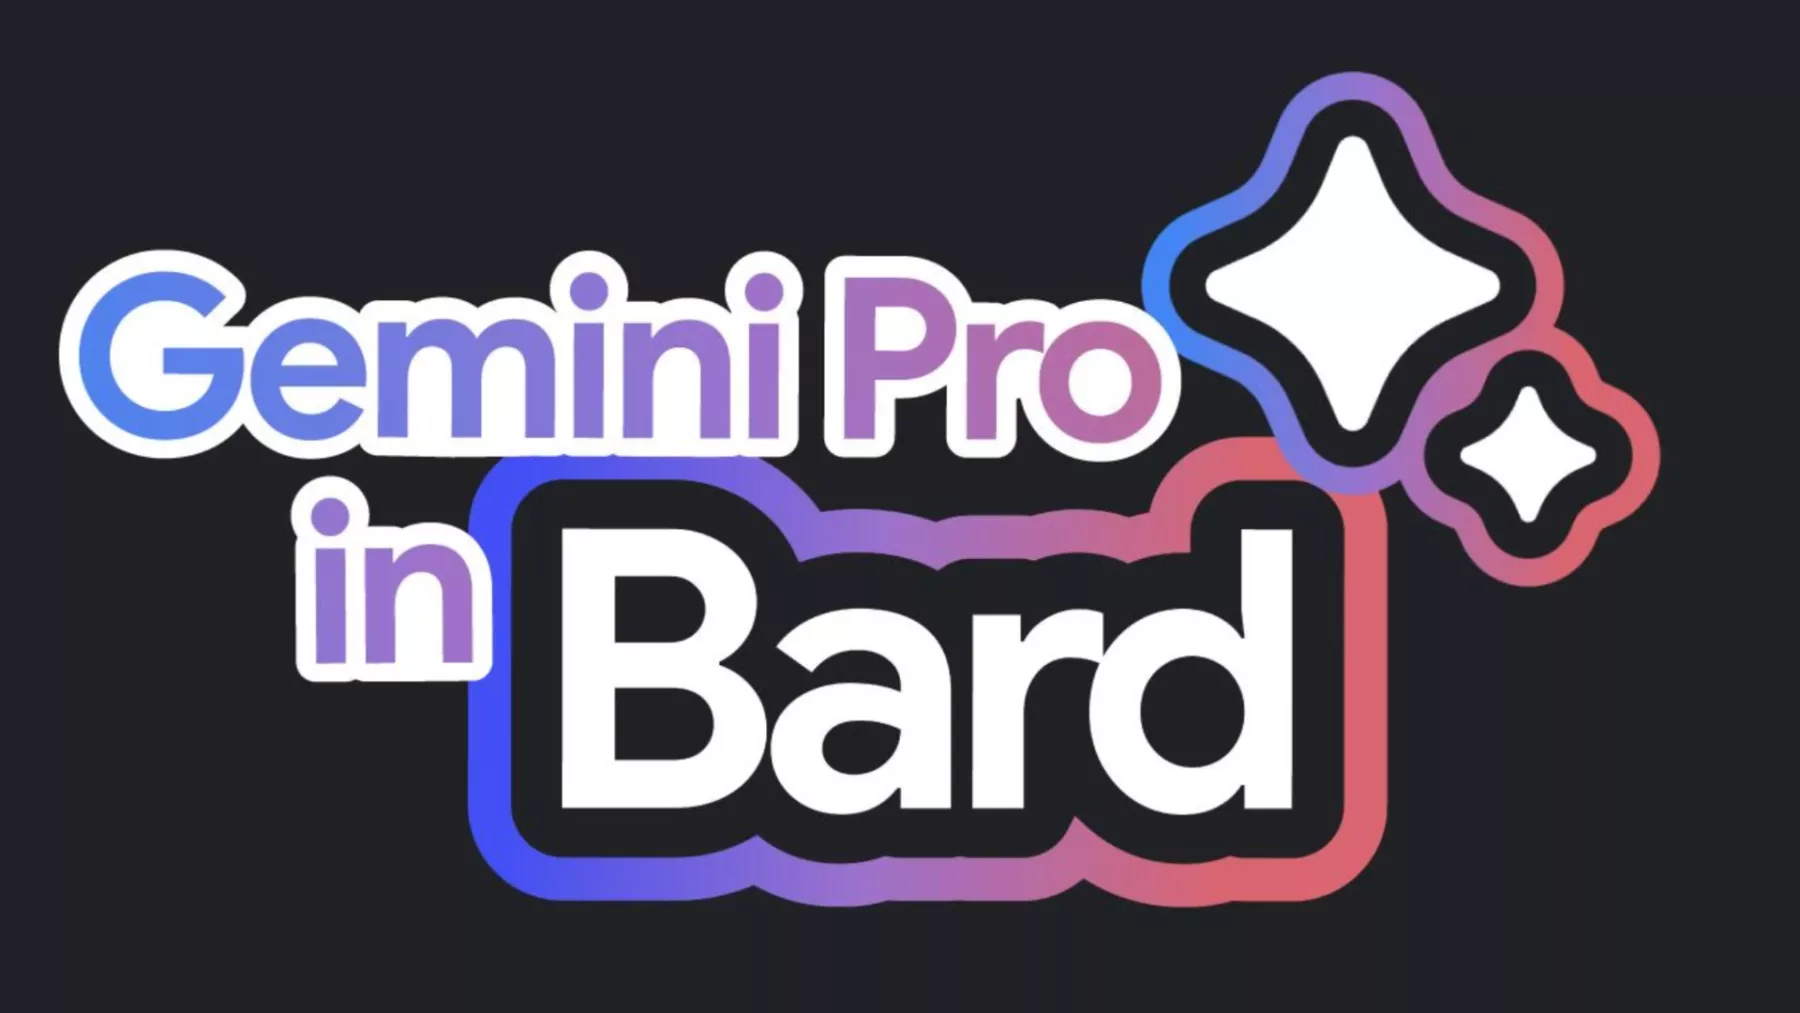 Bard Gemini Pro